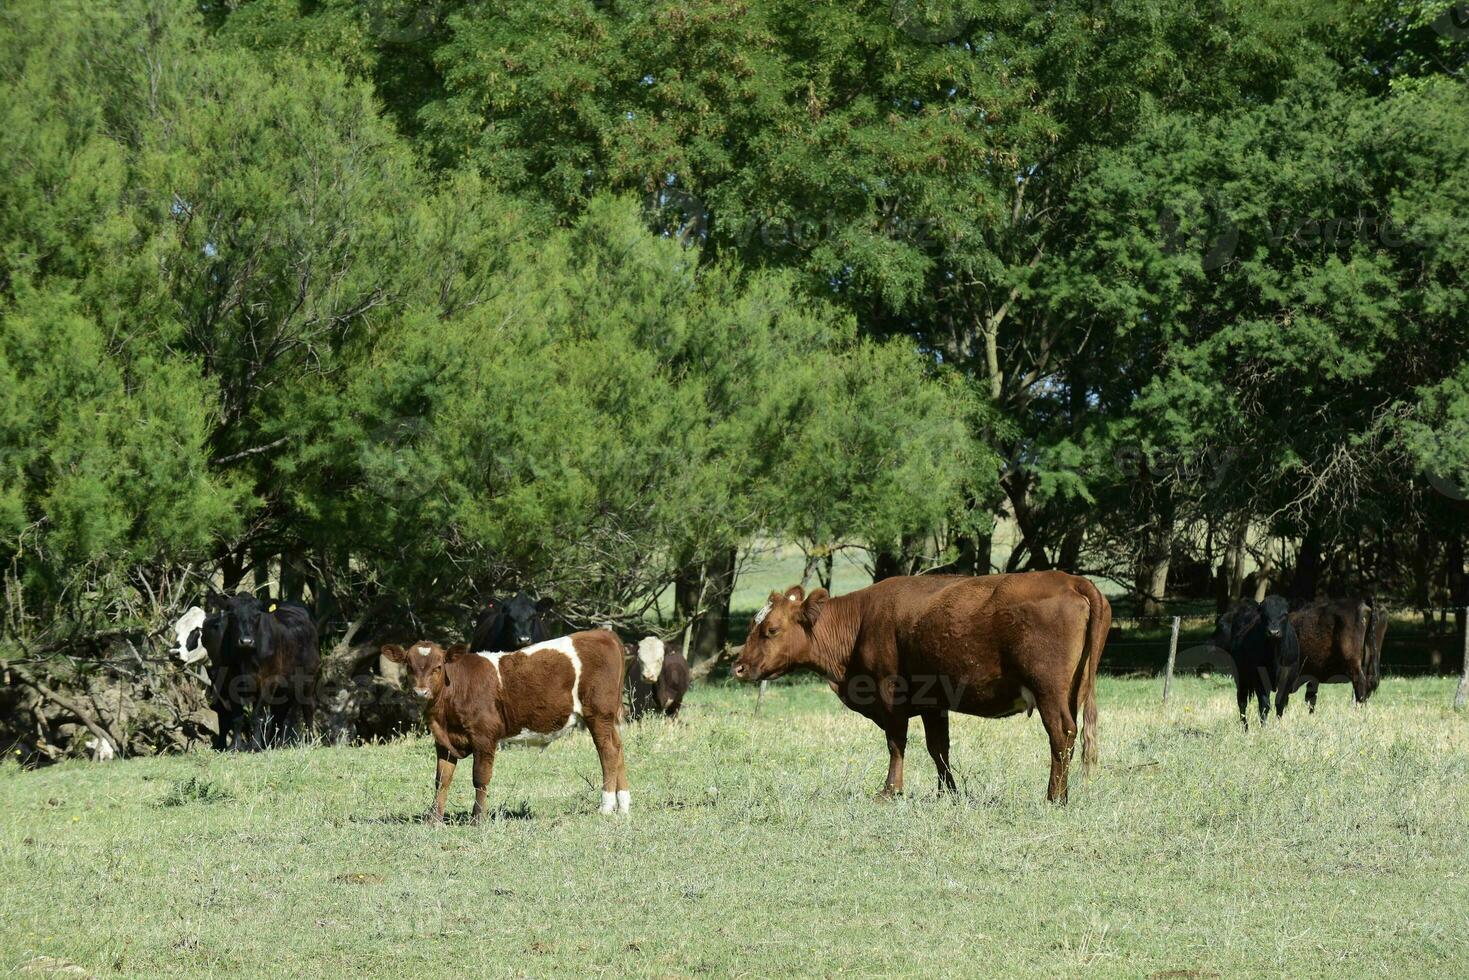 das Vieh im Argentinien Landschaft, Buenos Aires Provinz, Argentinien. foto